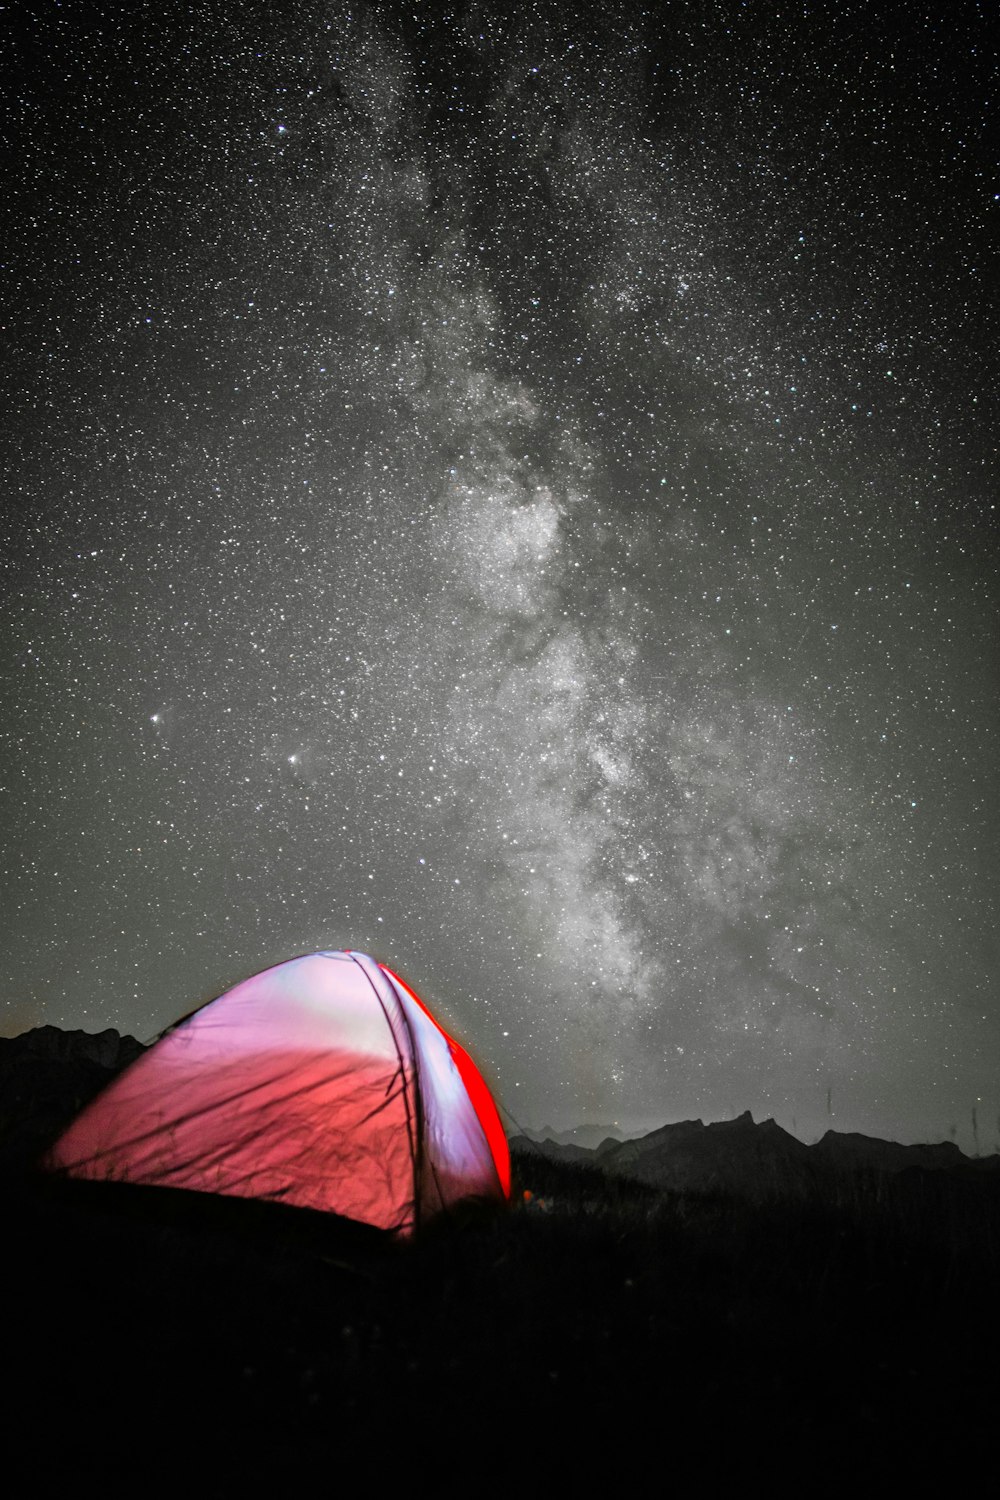 tenda rossa sotto la notte stellata